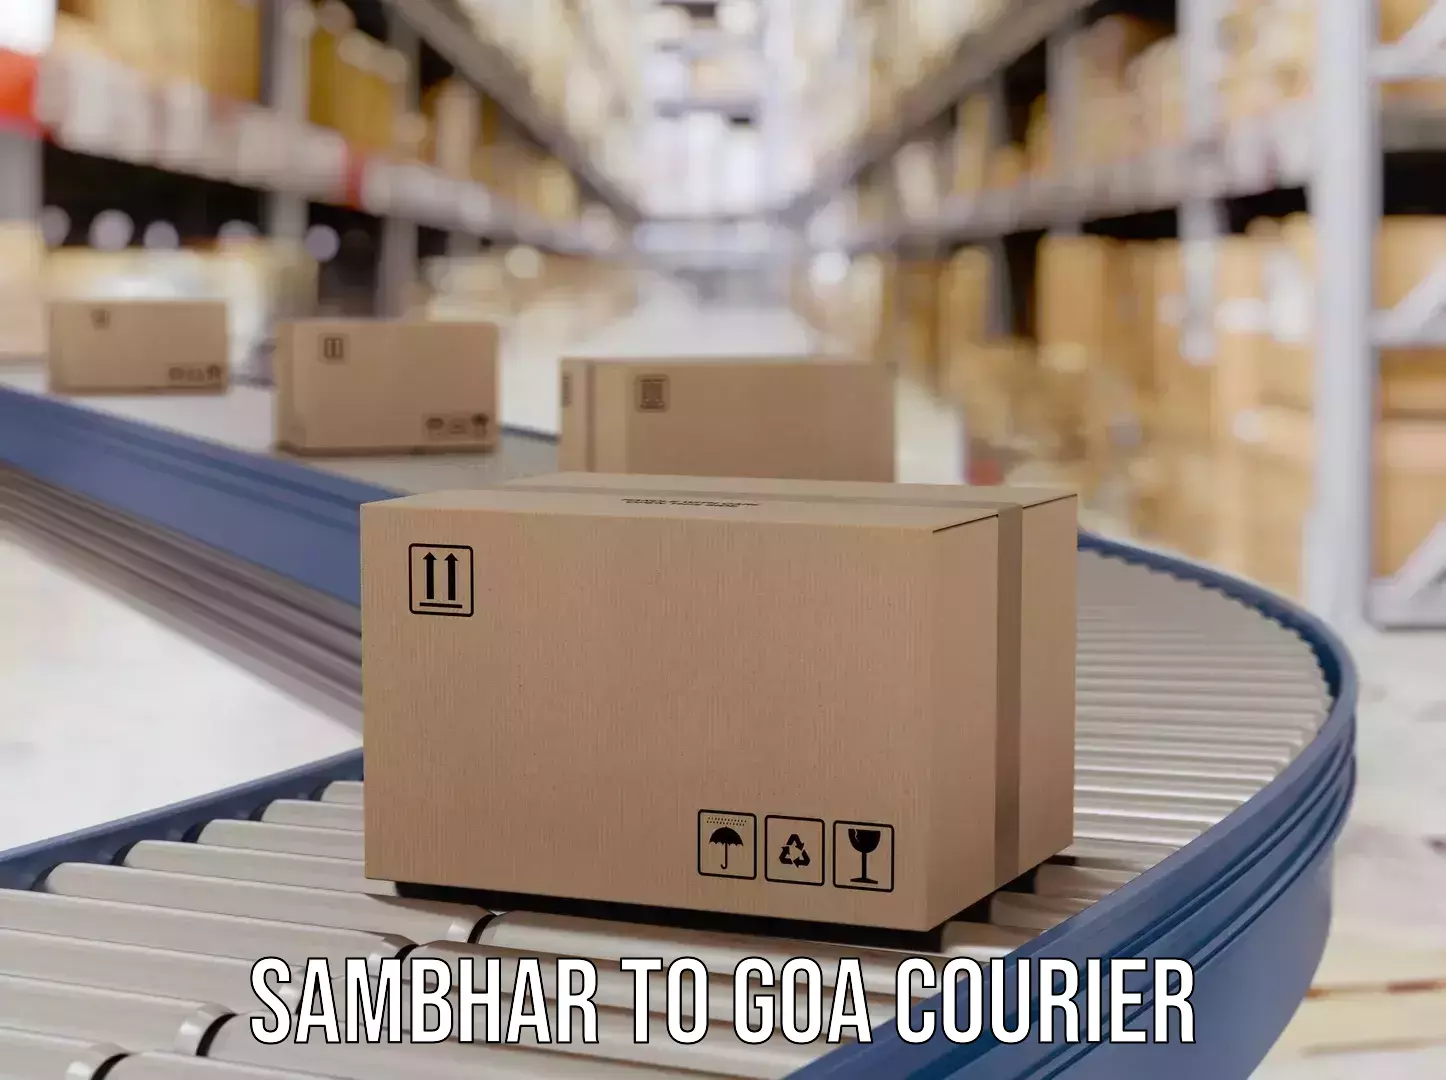 Global courier networks Sambhar to Goa